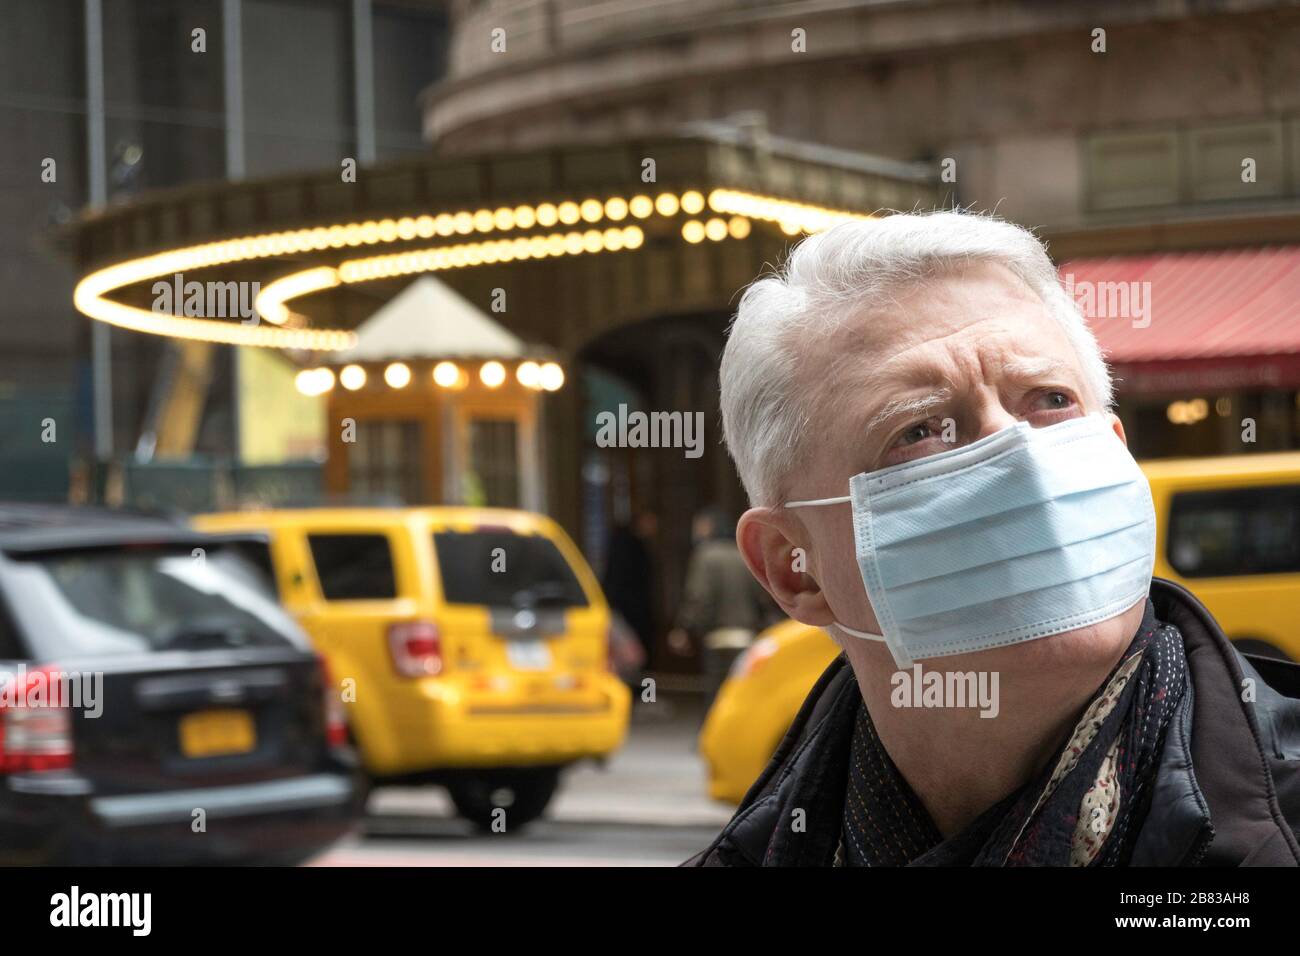 El hombre mayor con preocupaciones de salud y seguridad usa una máscara protectora en Midtown Manhattan, Nueva York, Estados Unidos Foto de stock